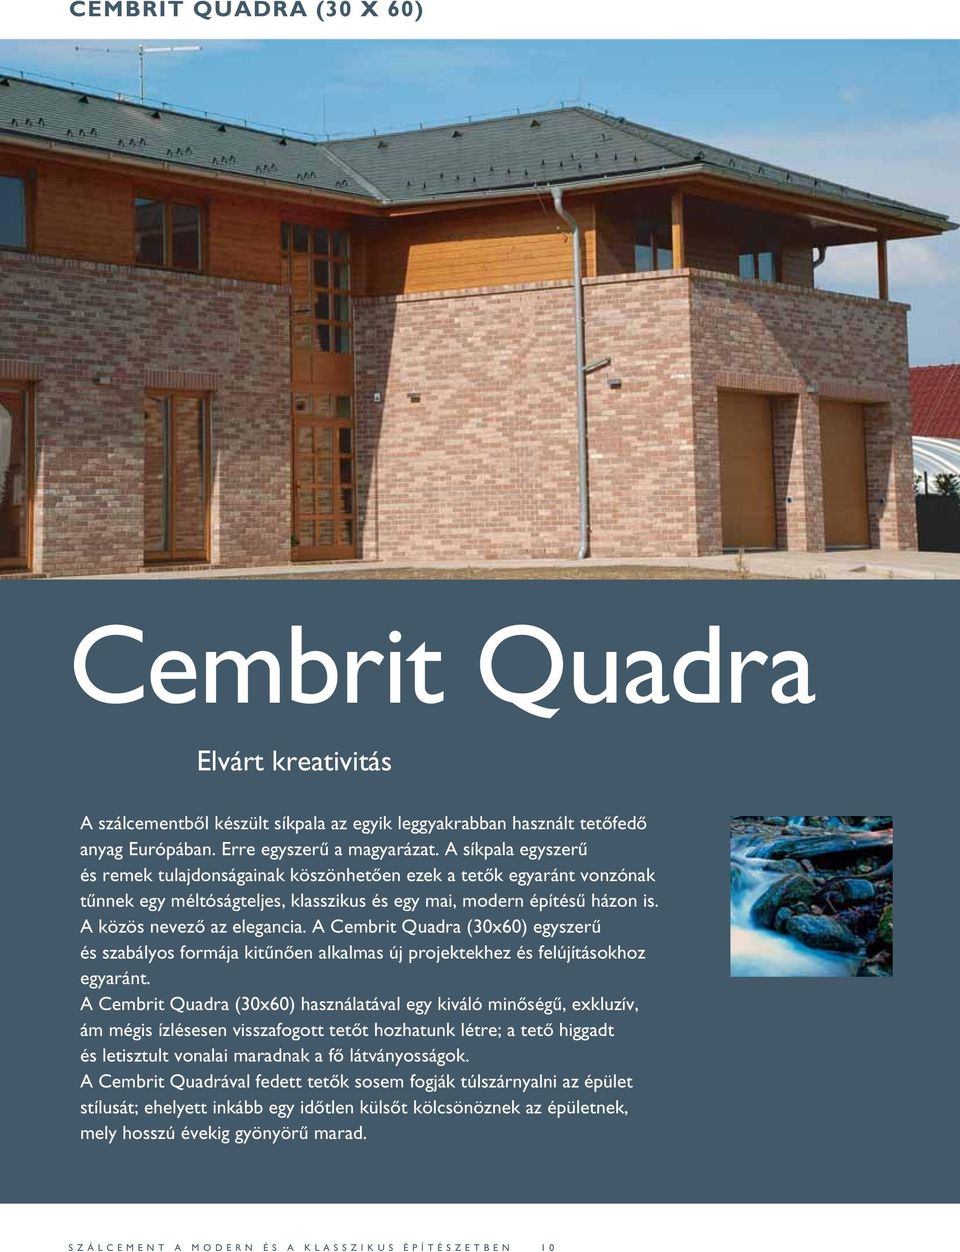 A Cembrit Quadra (30x60) egyszerű és szabályos formája kitűnően alkalmas új projektekhez és felújításokhoz egyaránt.